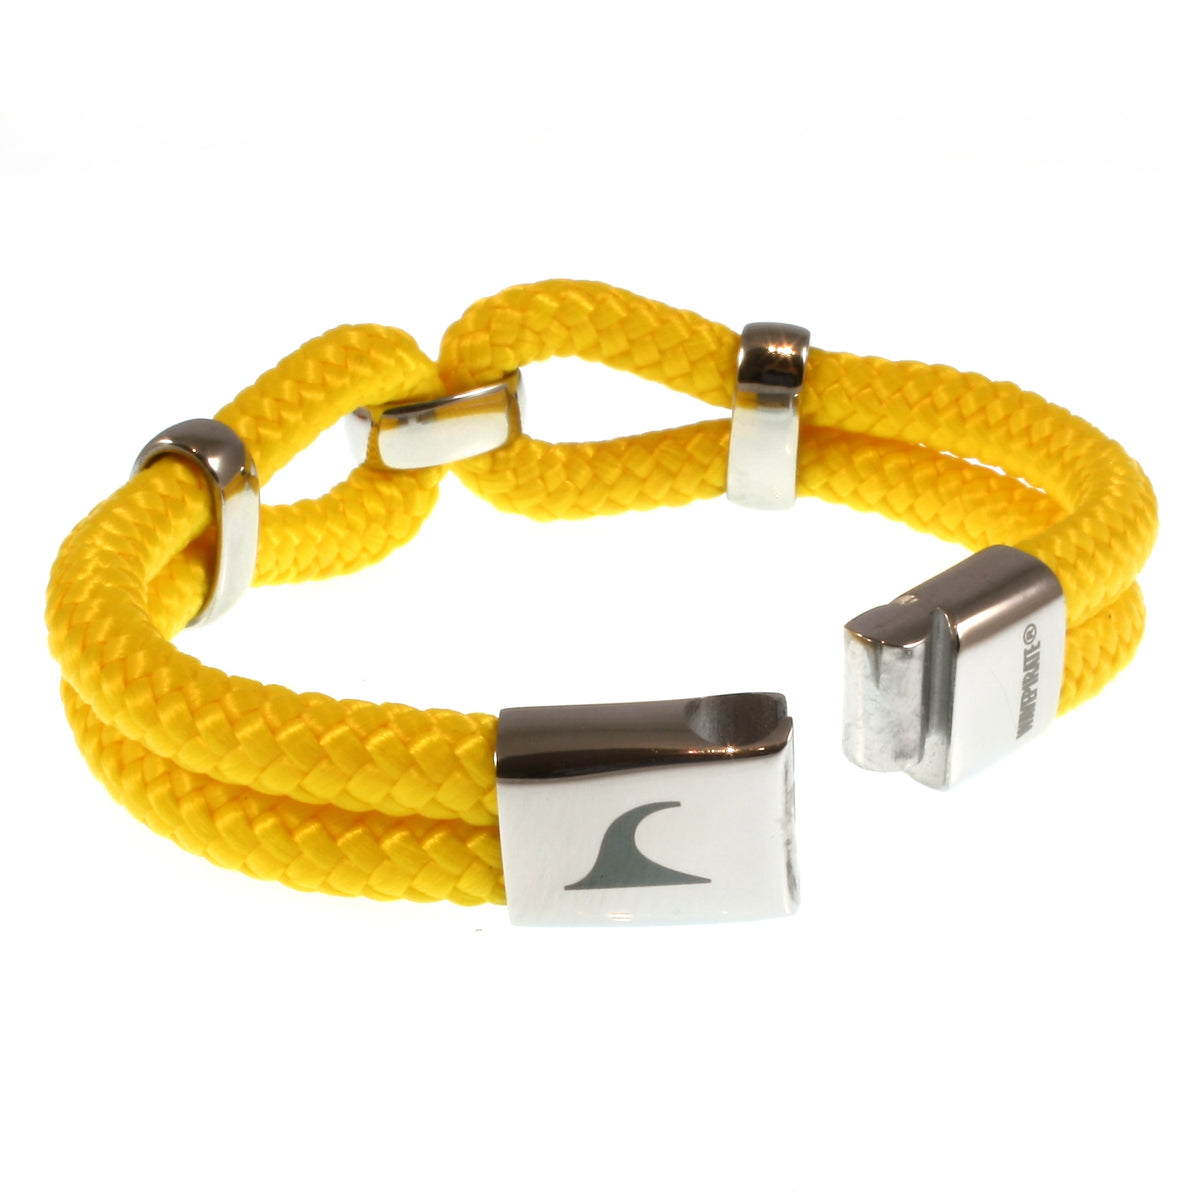 Damen-Segeltau-armband-roma-gelb-geflochten-Edelstahlverschluss-offen-wavepirate-shop-st